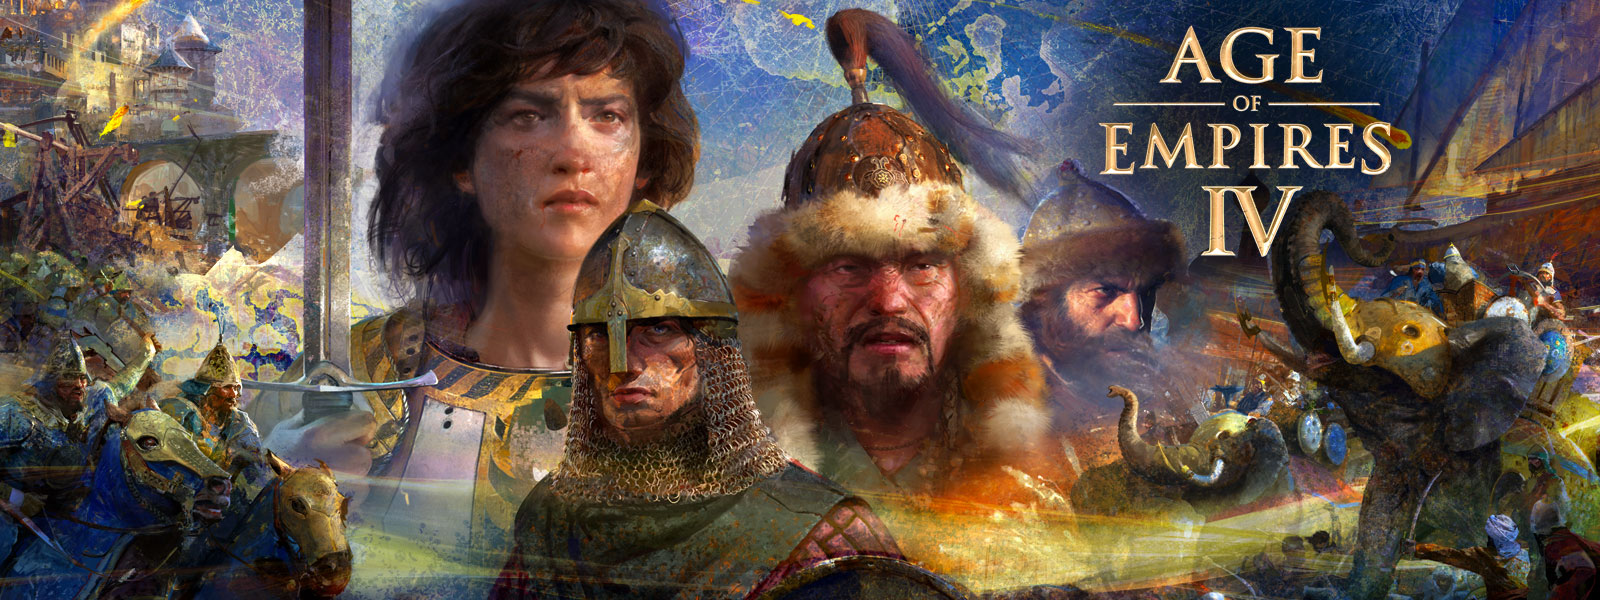 Age of Empires IV. Négy karakter a háttérben egy térképpel háborús jelenetekkel, elefántokkal és lovasokkal